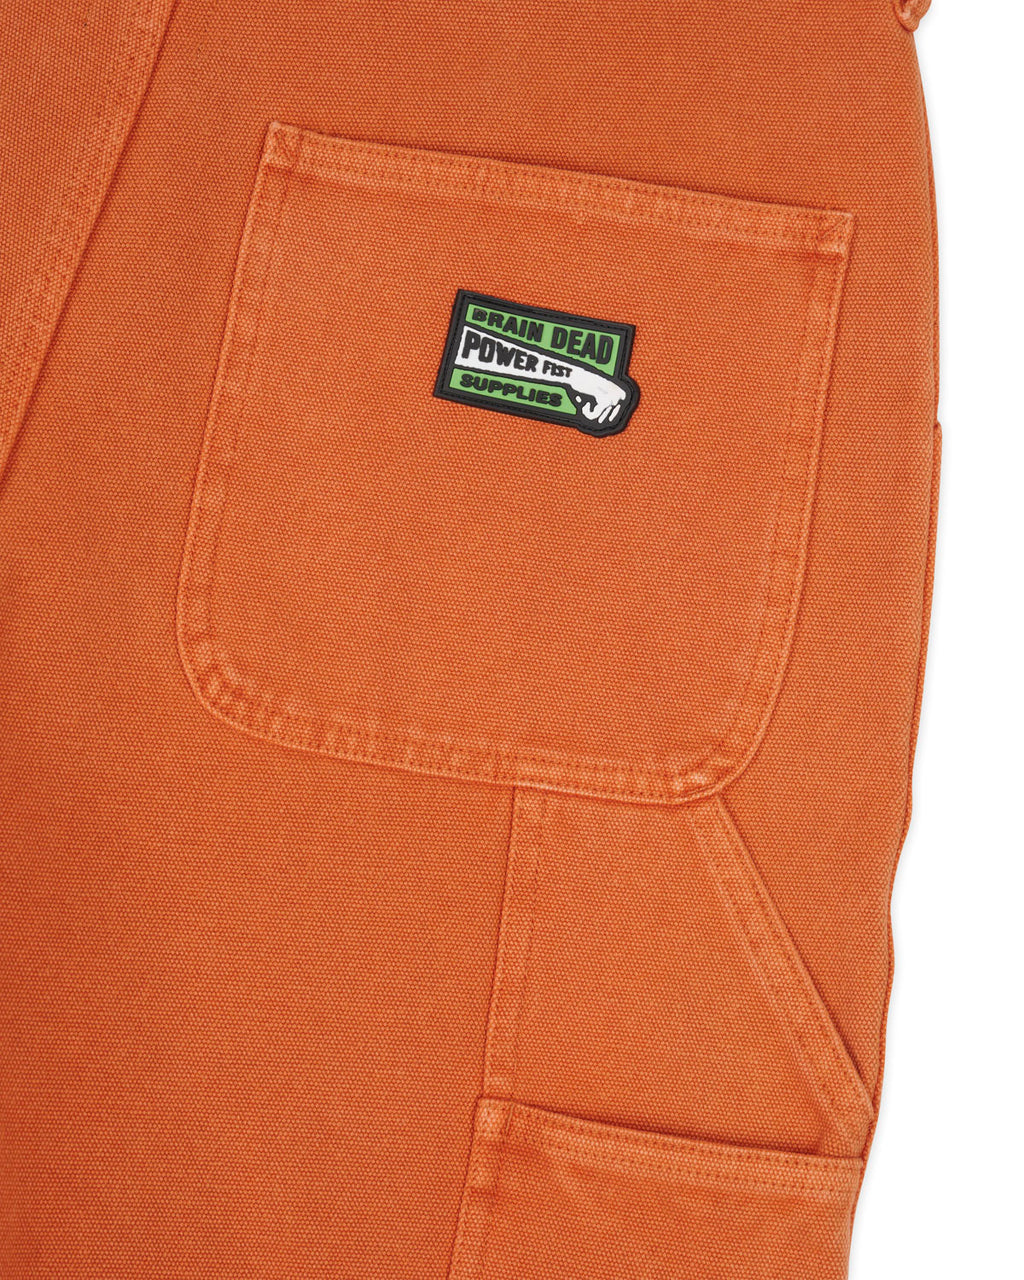 Washed Hard Ware/Soft Wear Carpenter Short - Burnt Orange 3